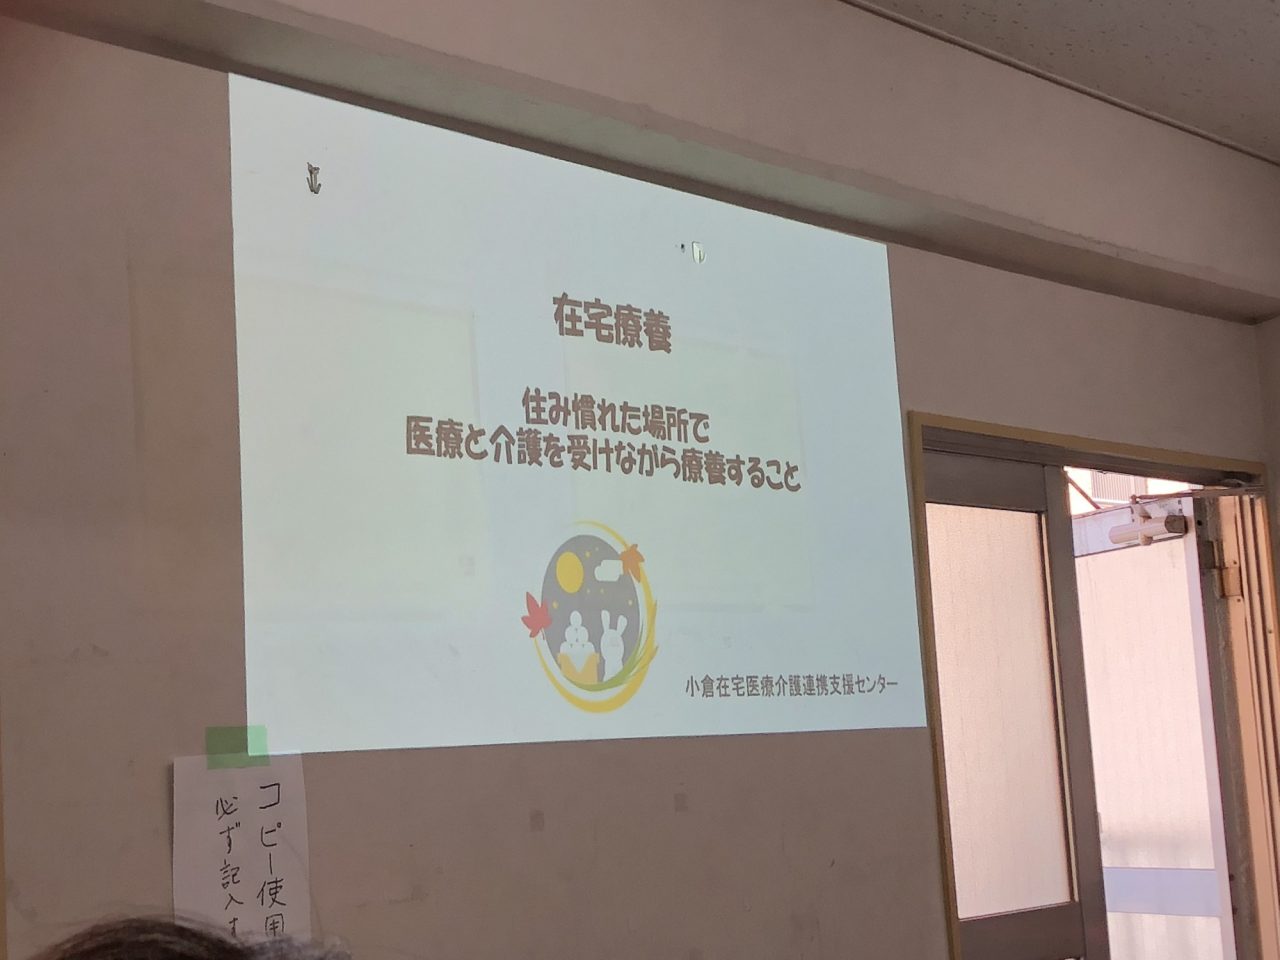 【小倉】小倉北区ボランティアクラブで普及啓発のミニ講座を開催しました